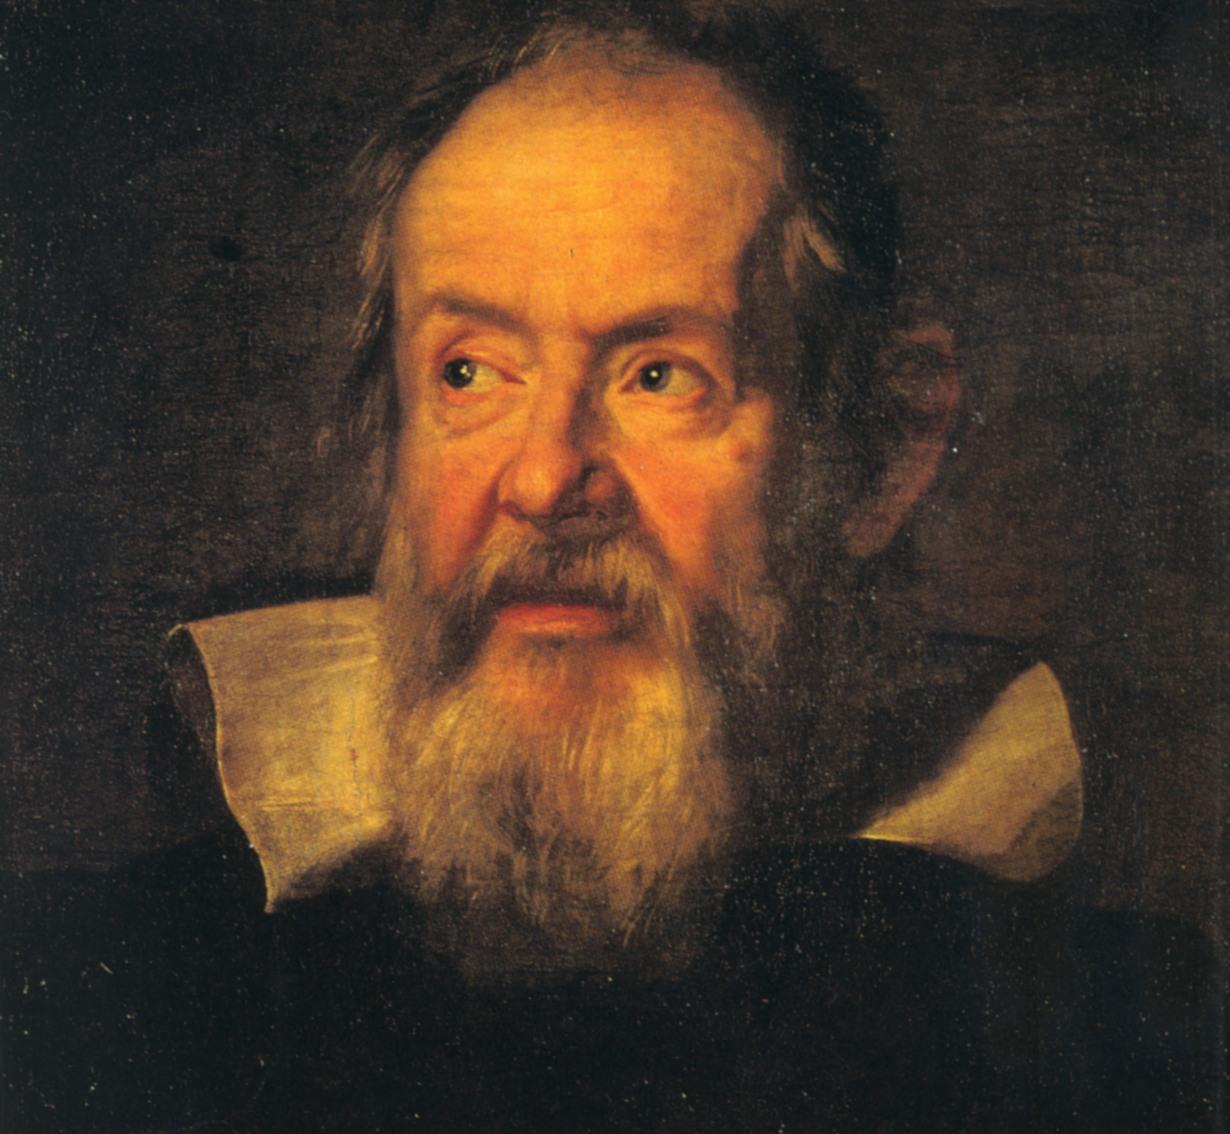 15 ФЕВРАЛЯ  день рождения Галилео Галилея